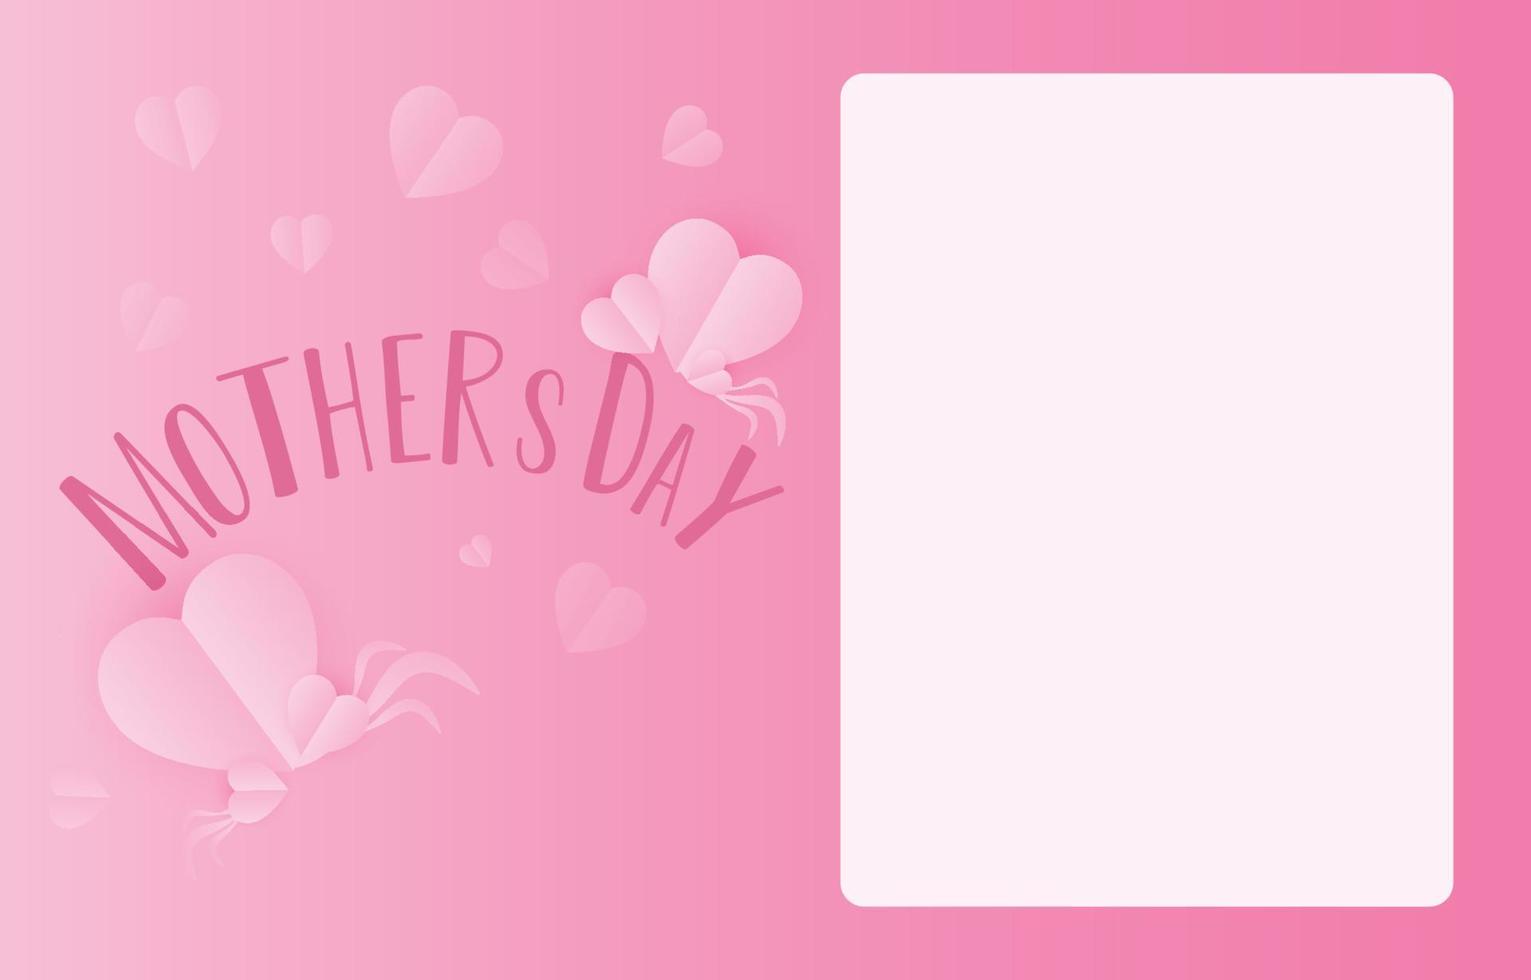 vettore della bandiera della cartolina d'auguri di festa della mamma con i cuori volanti 3d rosa papercut e carta bancaria .simbolo dell'amore e lettere scritte a mano su sfondo rosa.